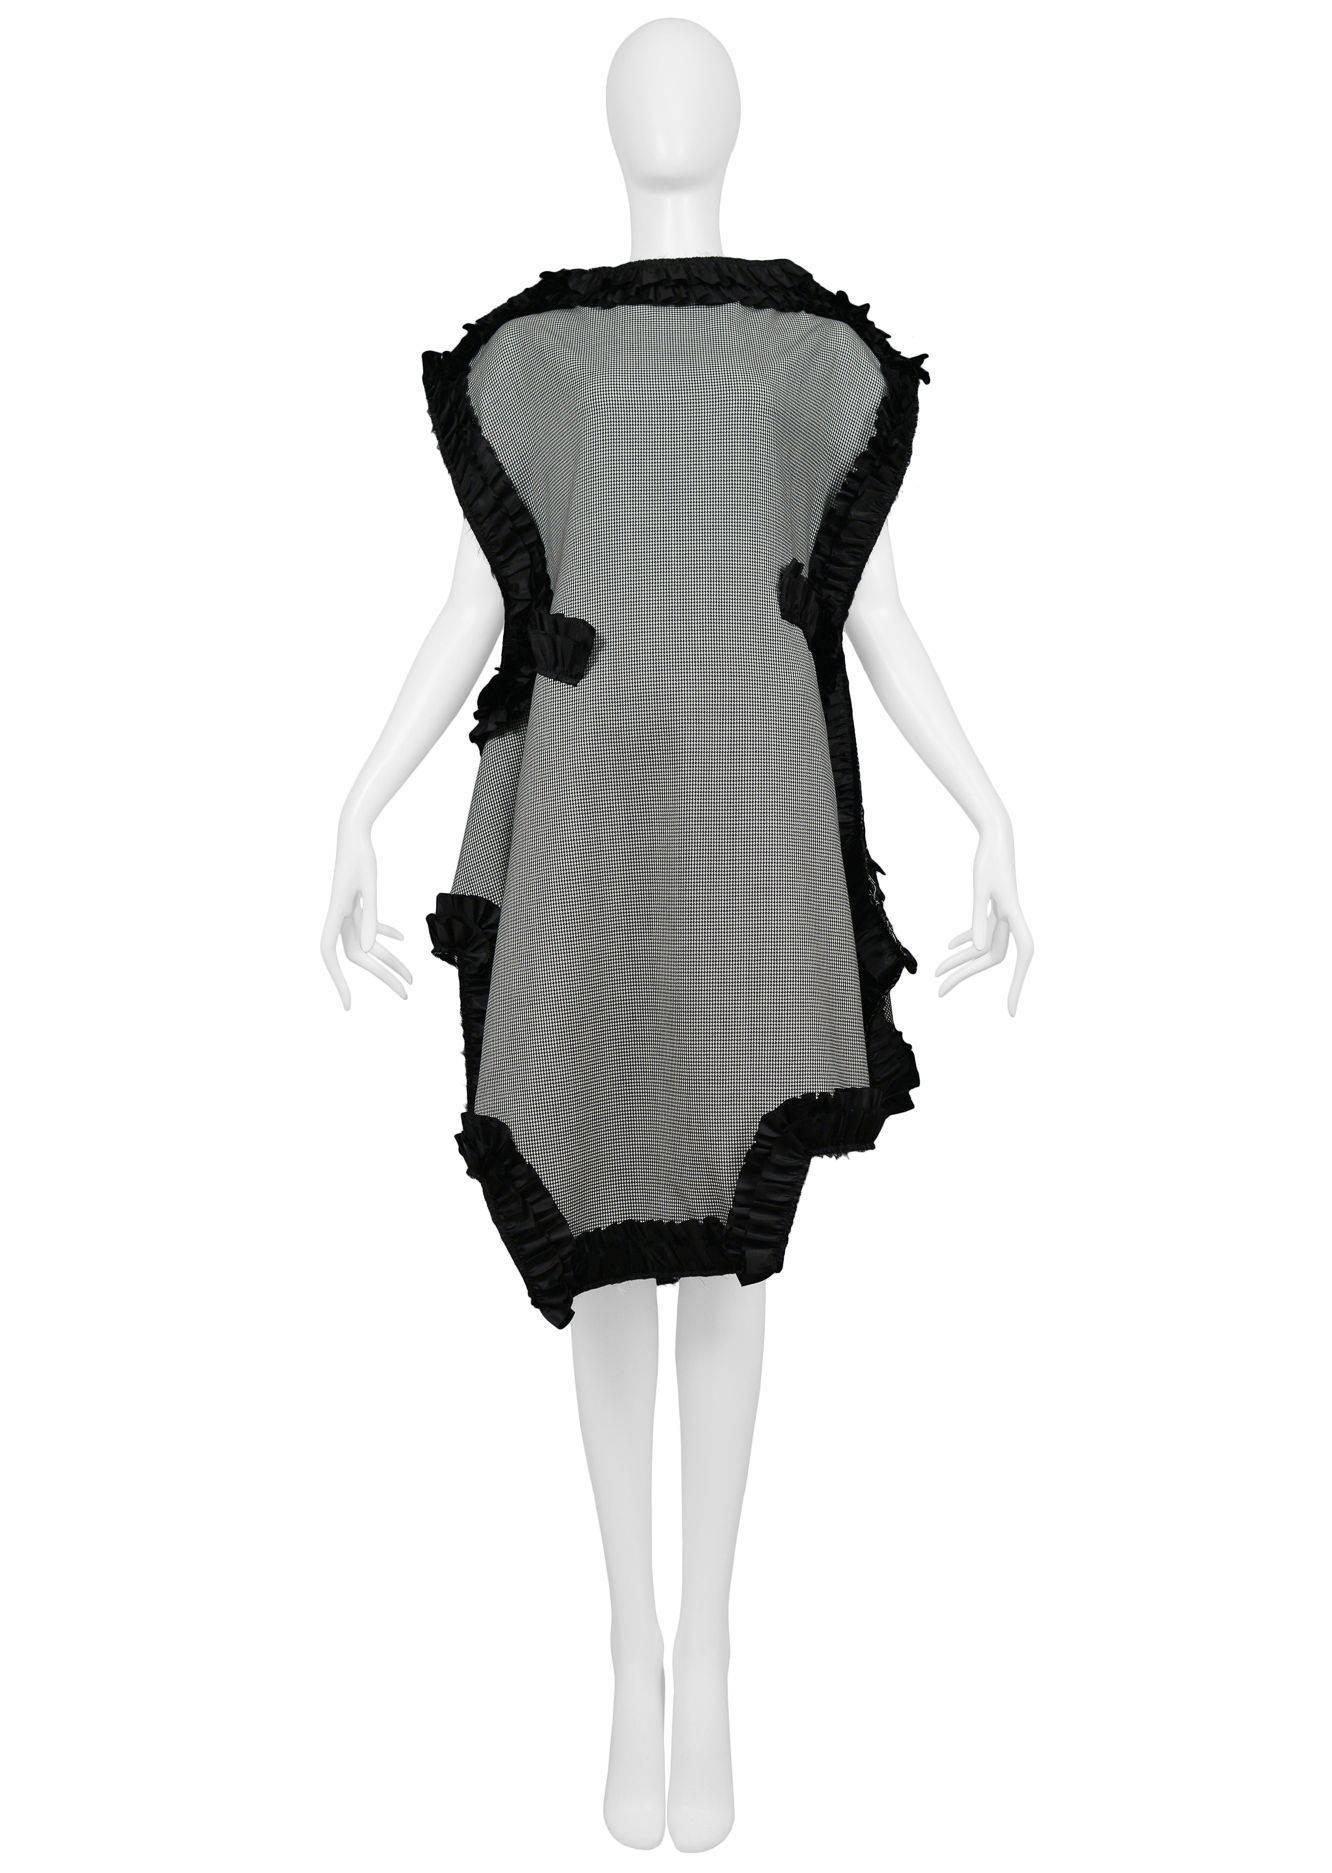 Schwarz-weiß kariertes flaches Tageskleid von Comme des Garcons mit schwarzem Rüschenbesatz. Kollektion 2013.